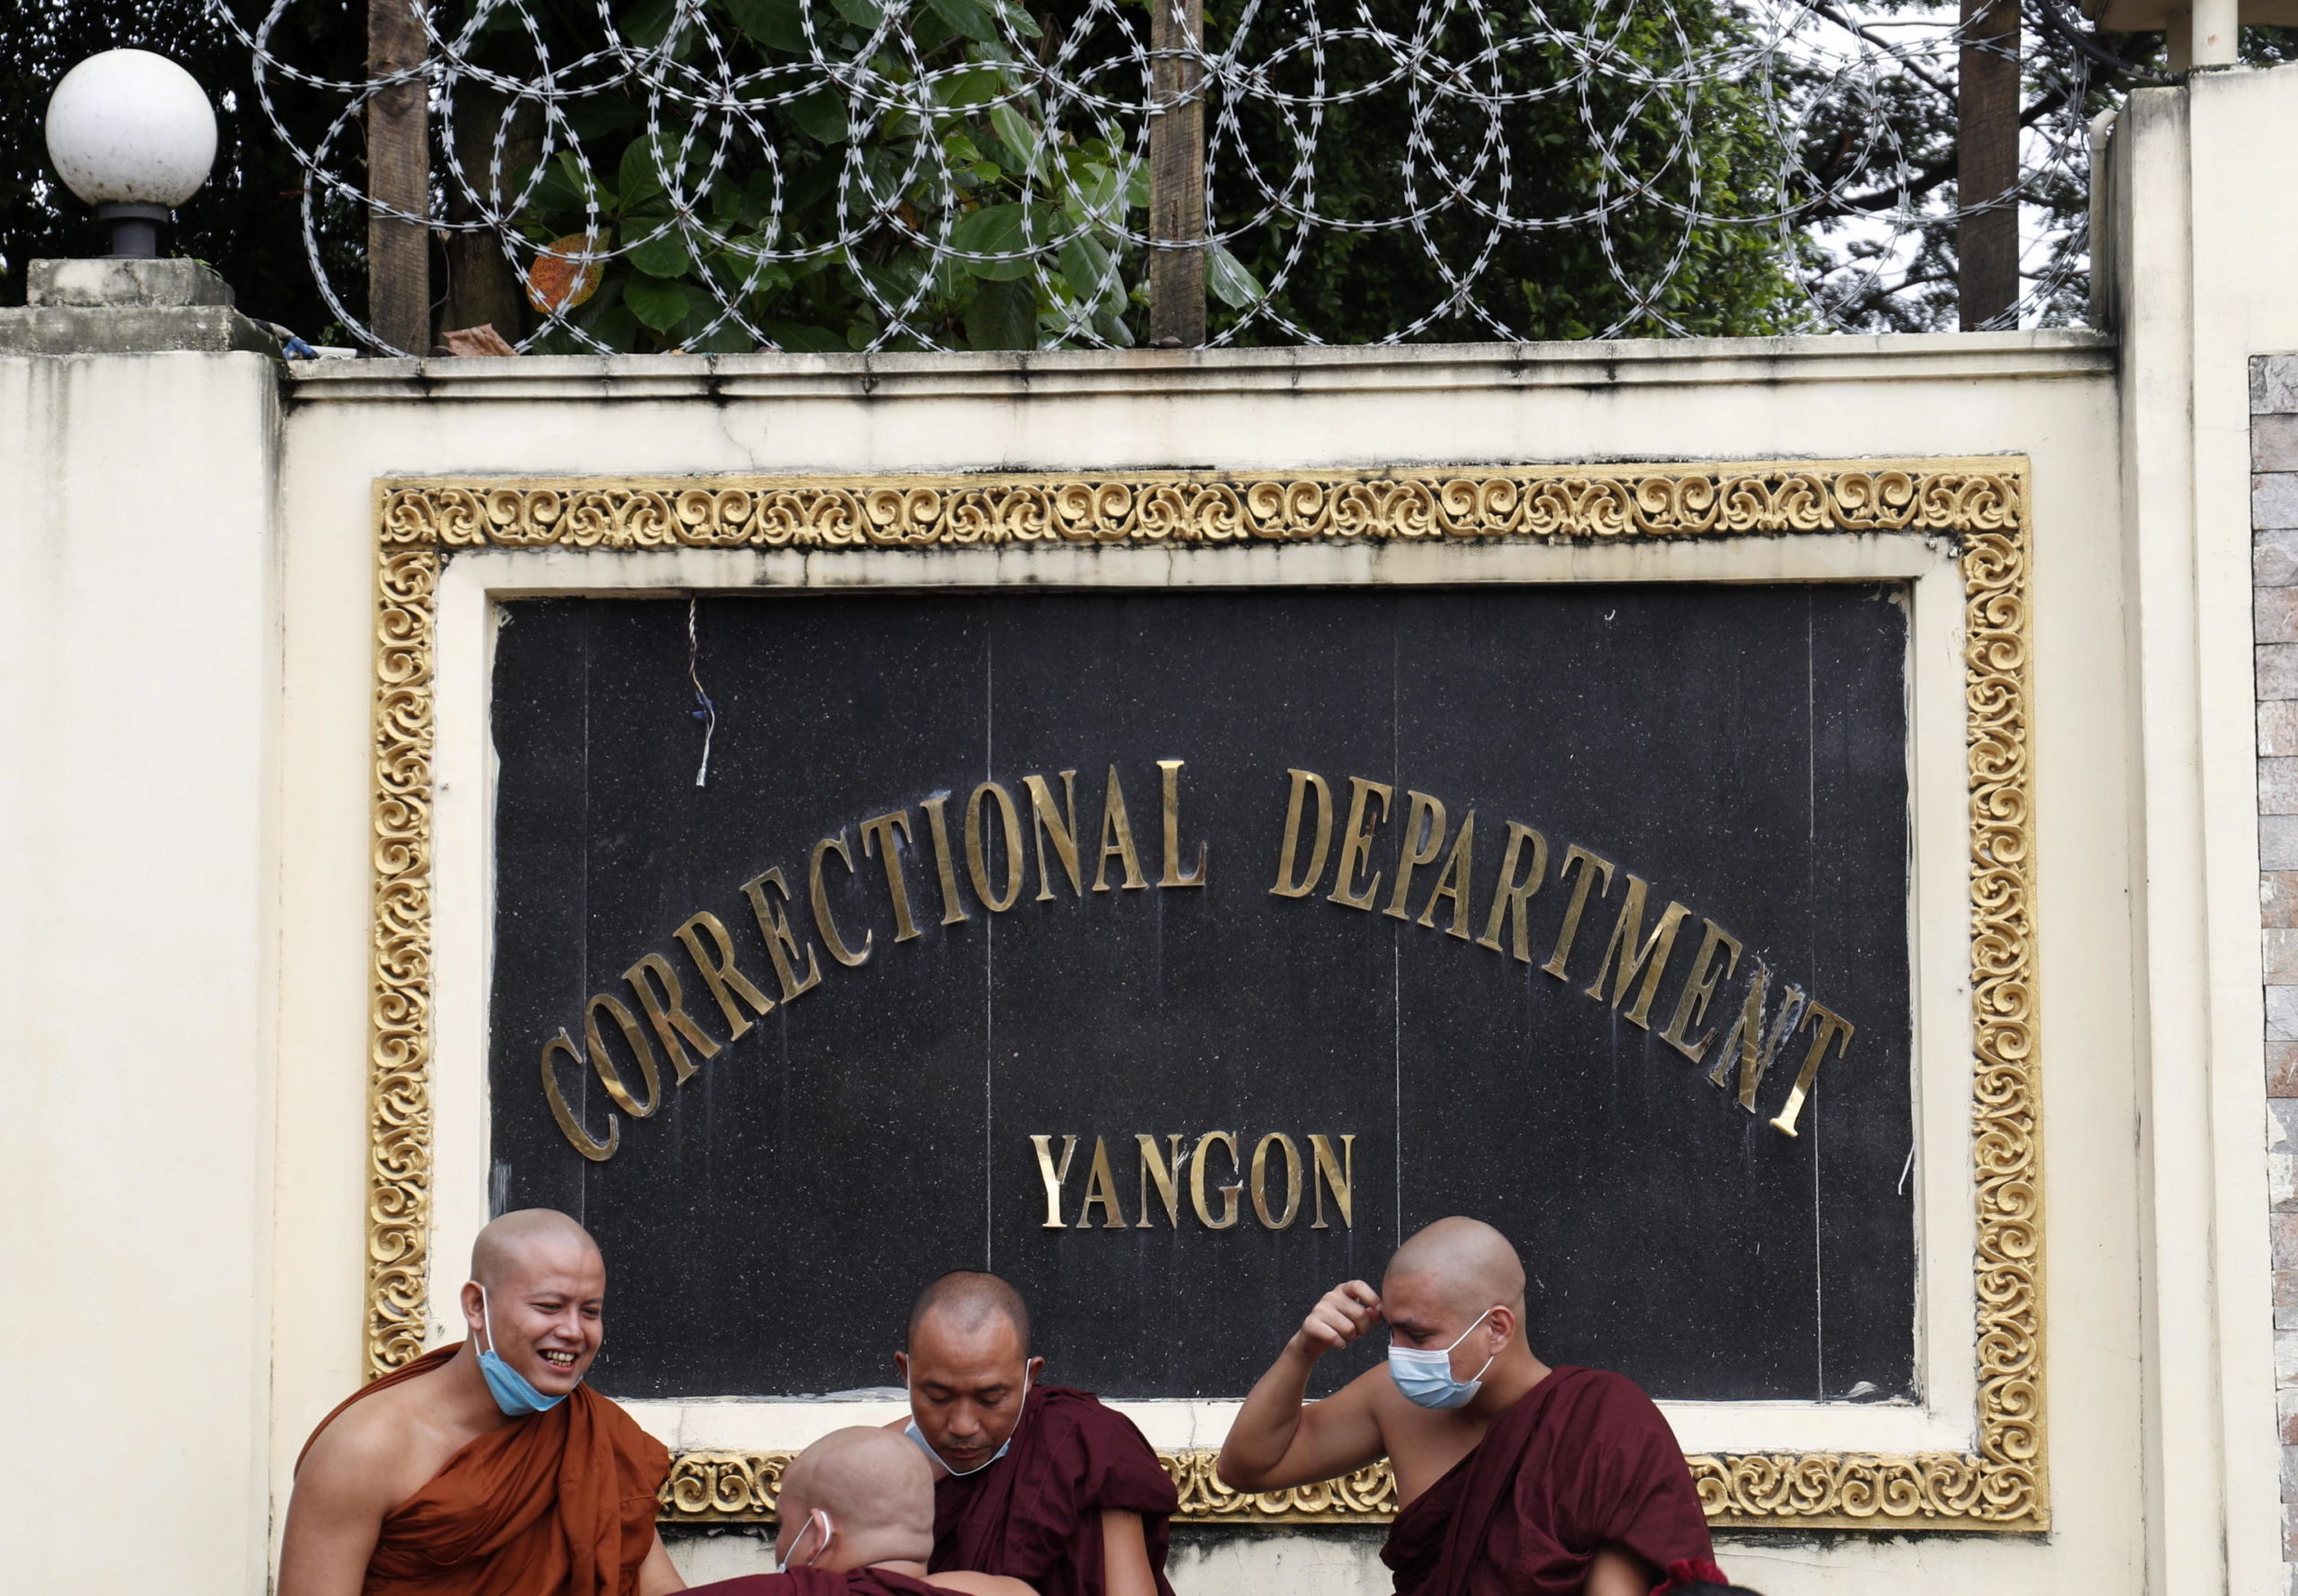 I monaci buddisti aspettano il rilascio dei detenuti fuori dalla prigione